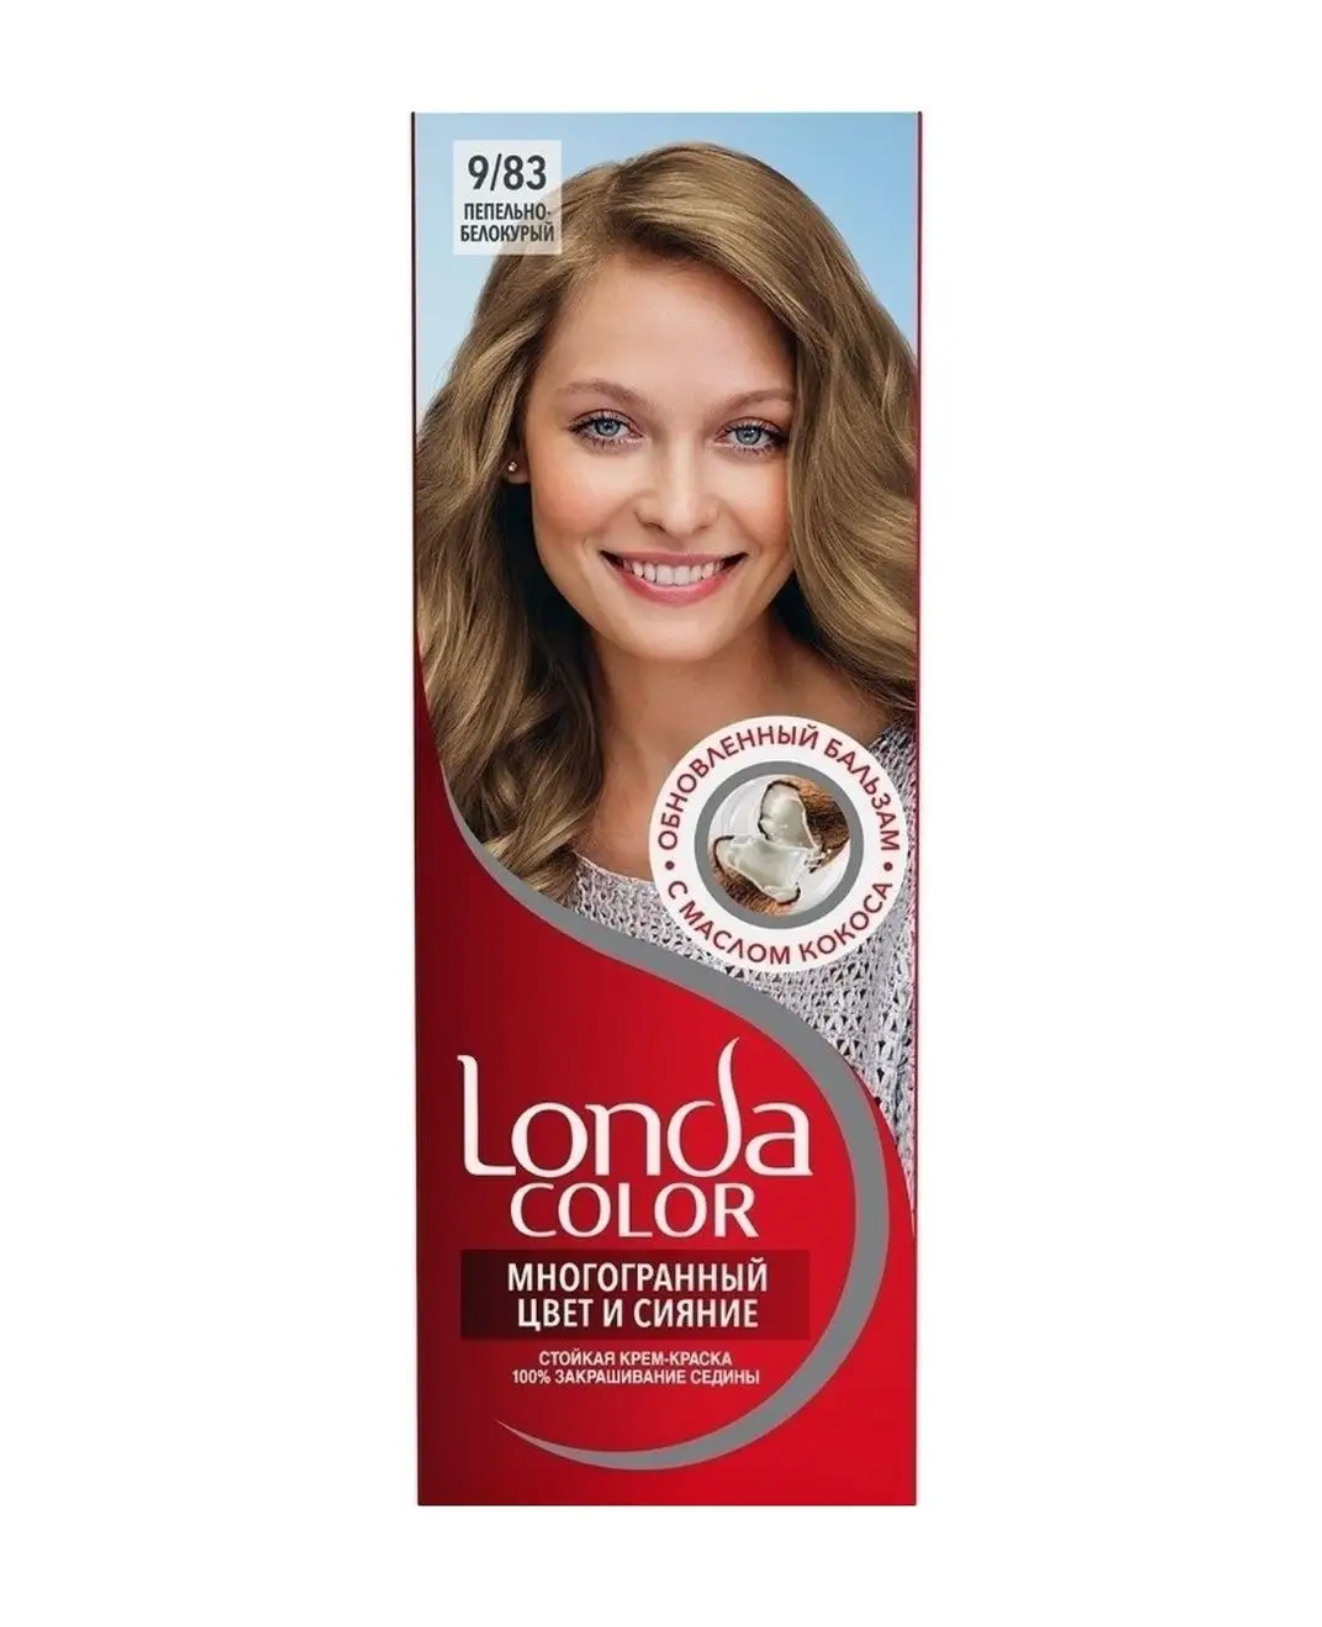 Лонда / Londa Color - Крем-краска для волос тон 9/83 Пепельно-белокурый 60 мл